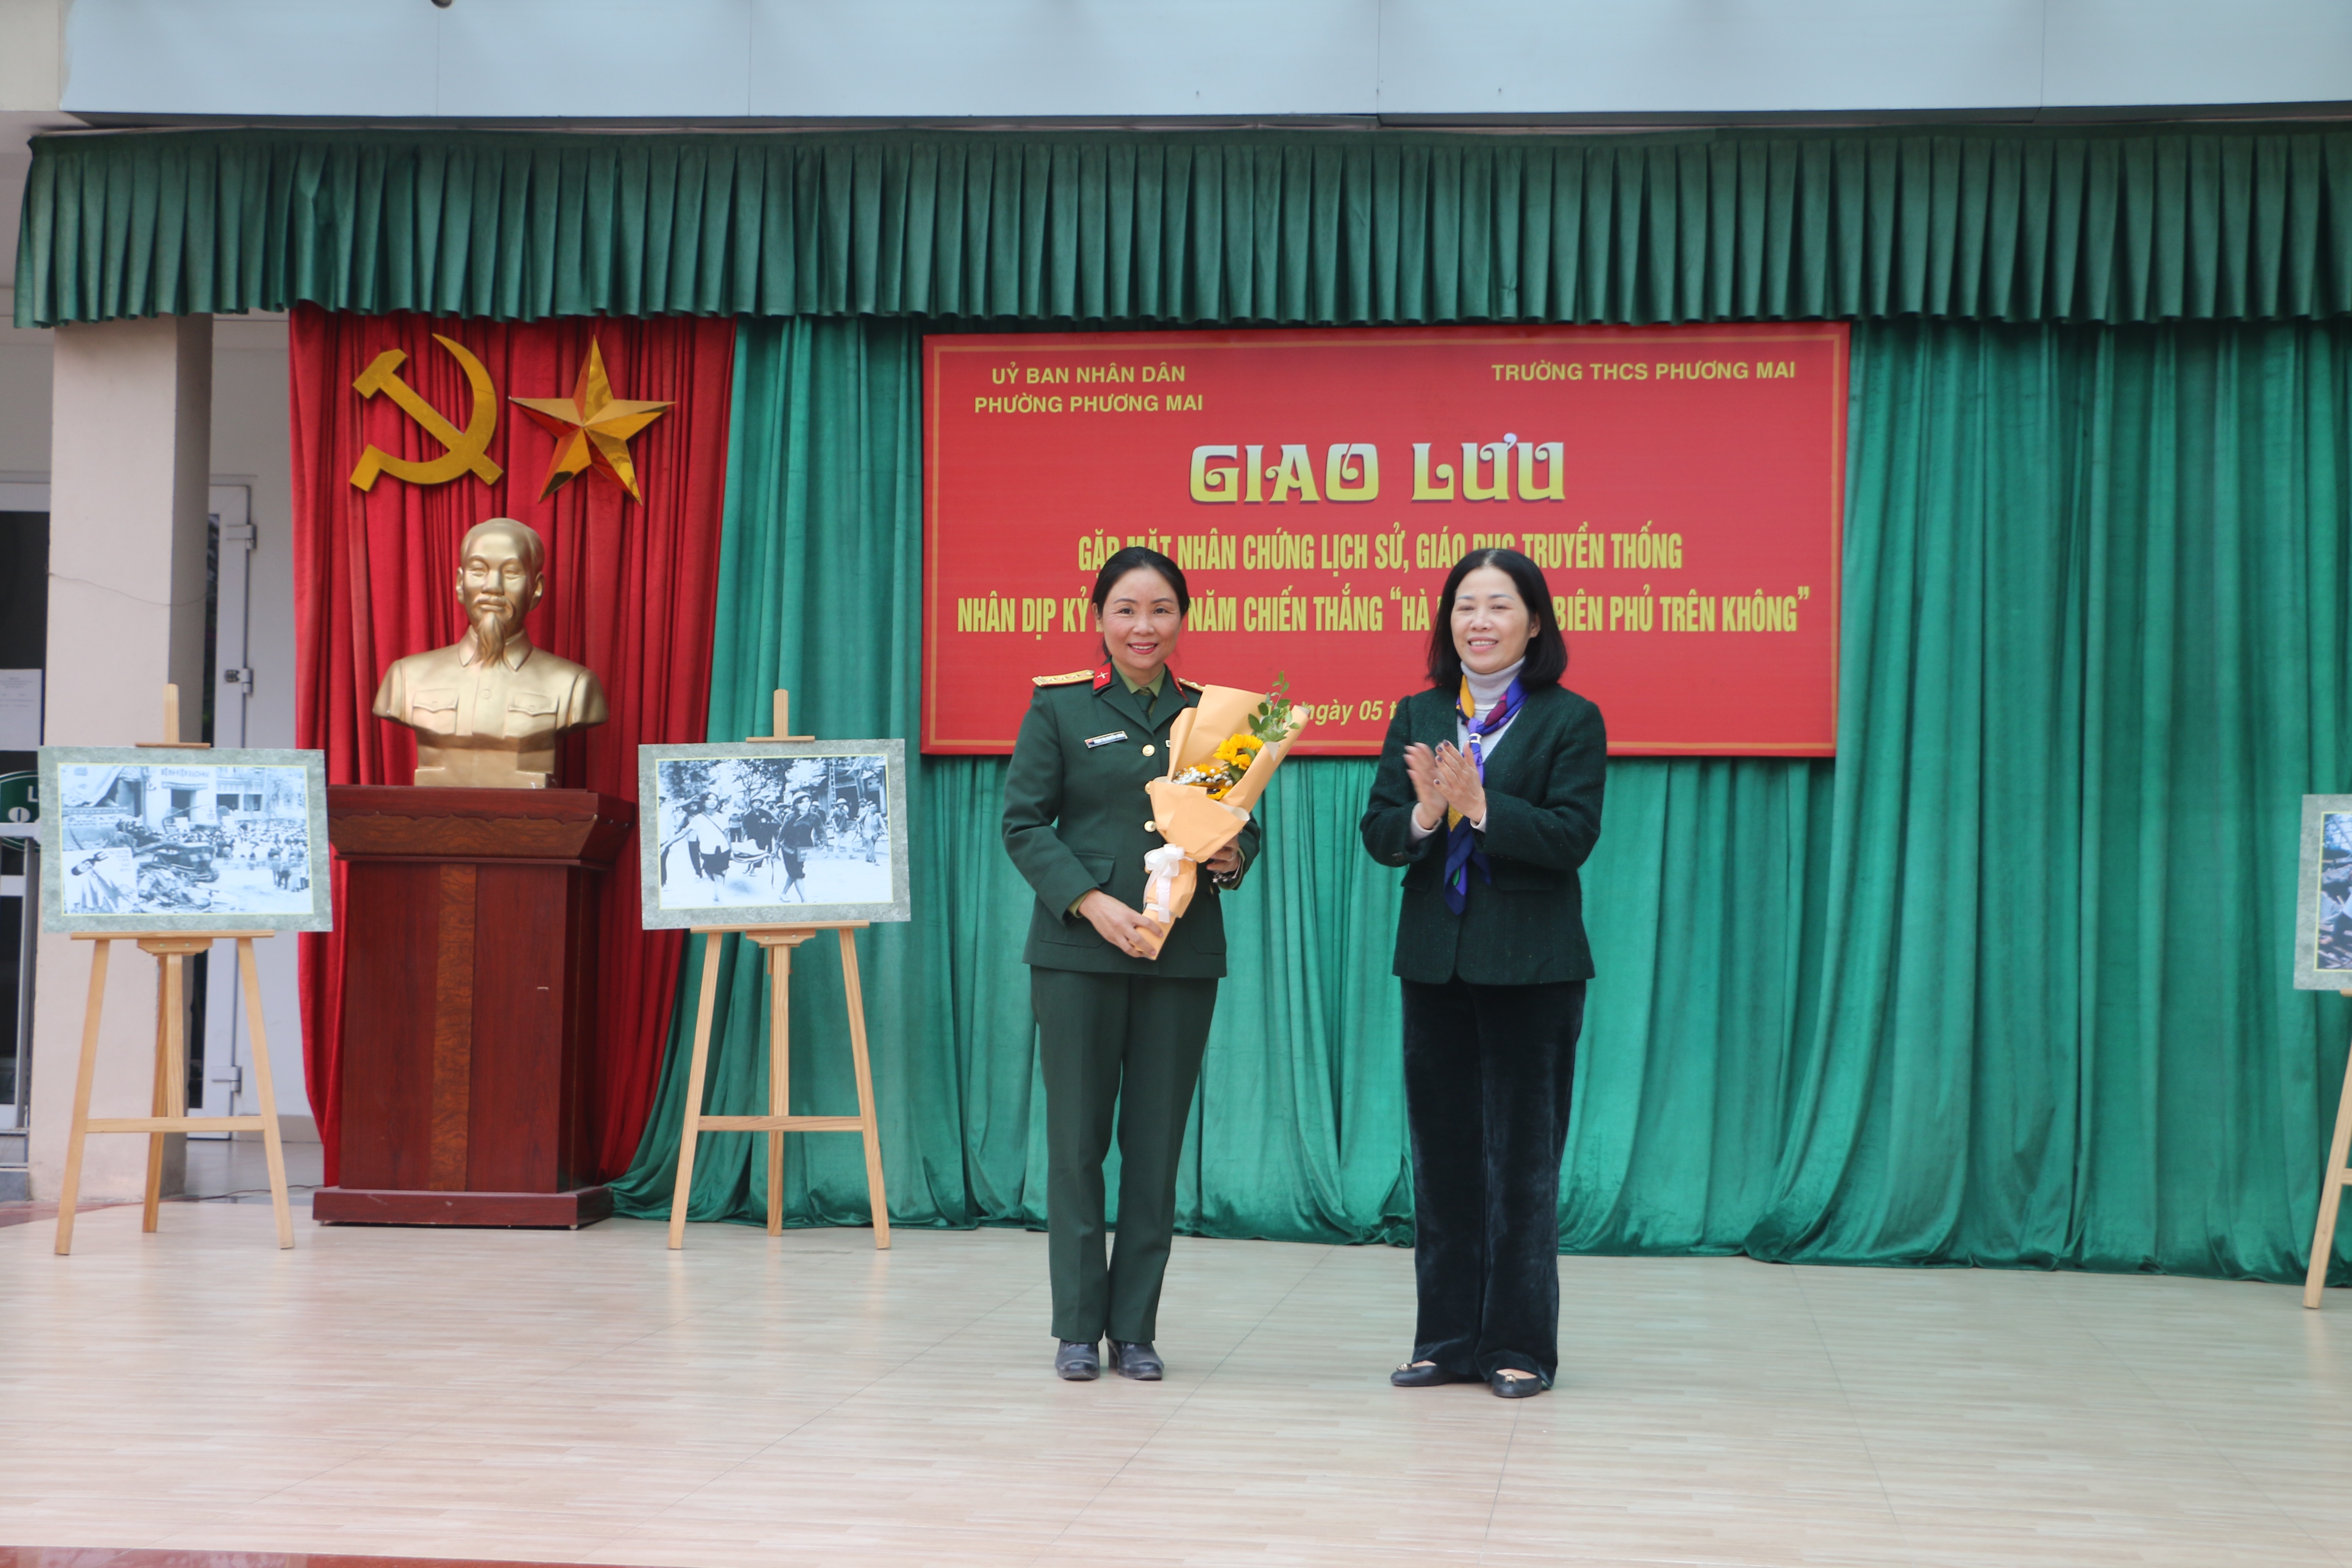 Giáo dục truyền thống cách mạng cho thế hệ trẻ nhân dịp kỷ niệm 50 năm chiến thắng “Hà Nội - Điện Biên Phủ trên không”